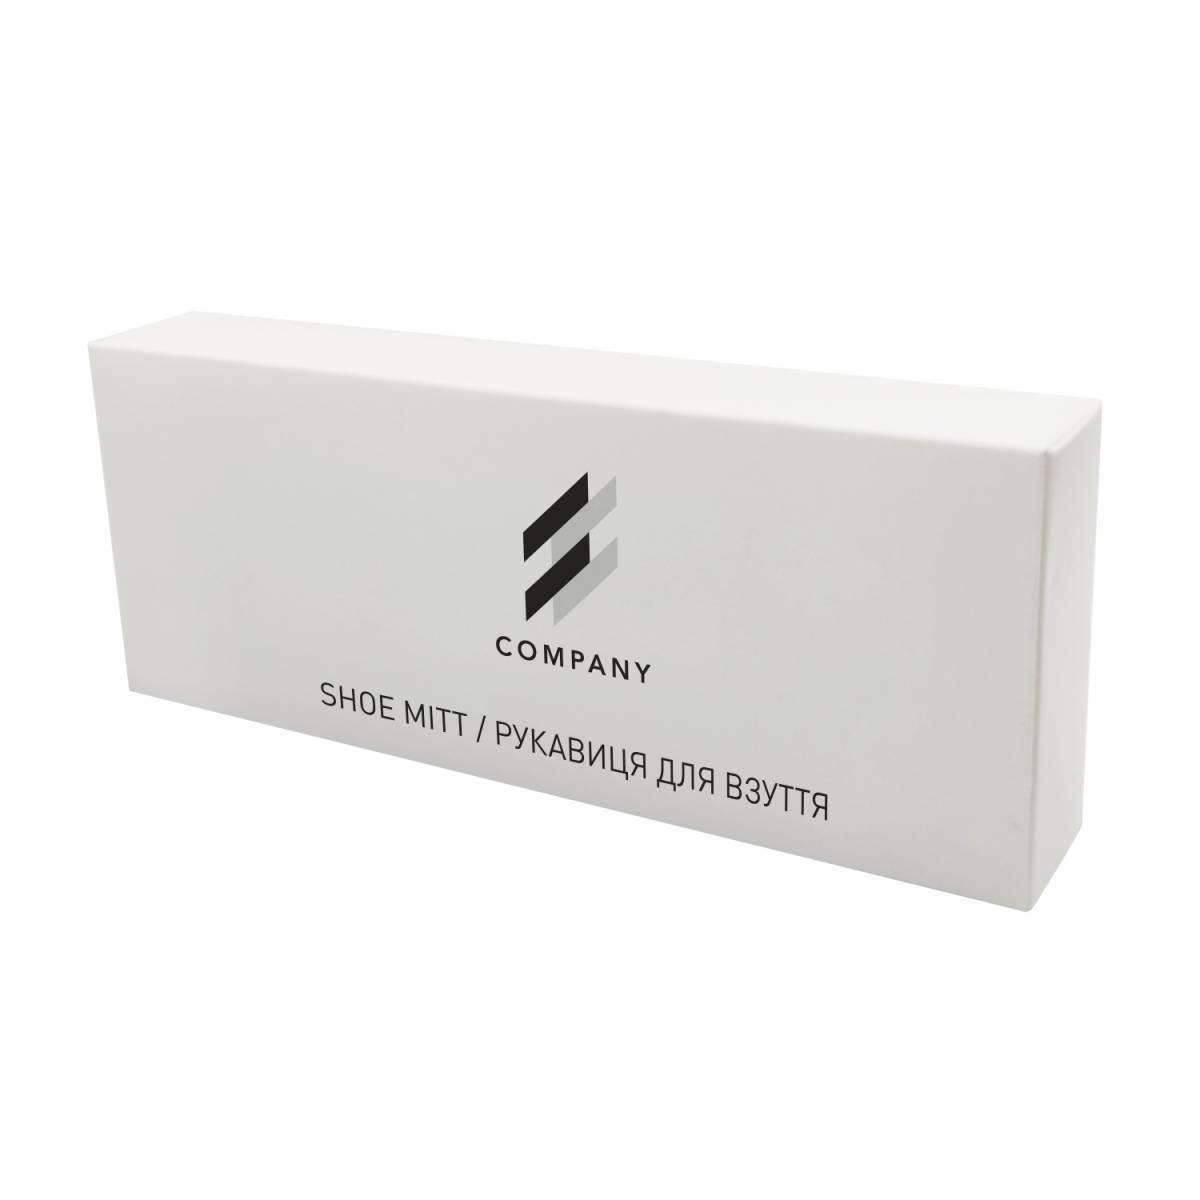 Рукавица для полировки обуви в коробочке из белого картона с логотипом LW-SM1 HSG